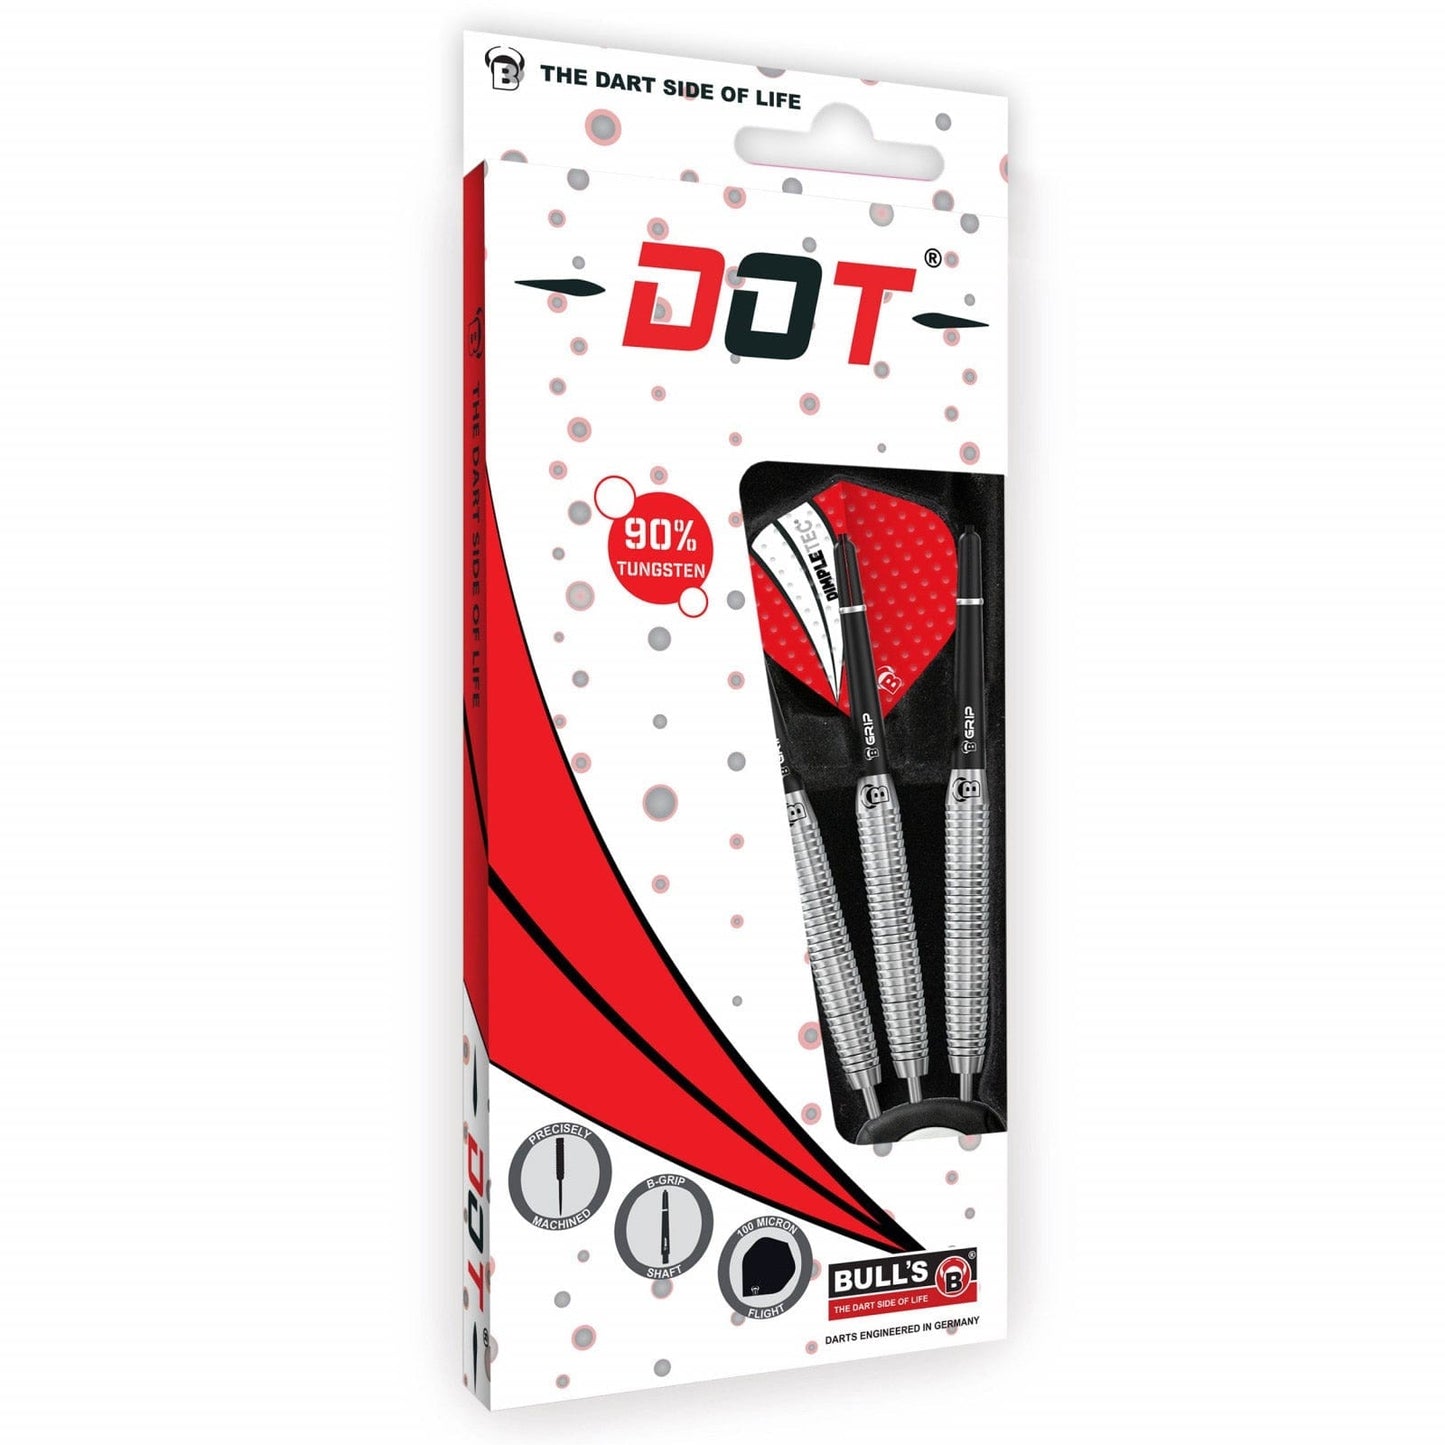 BULL'S Dot D7 Darts - Steel Tip - 90% Tungsten - Straight Shark